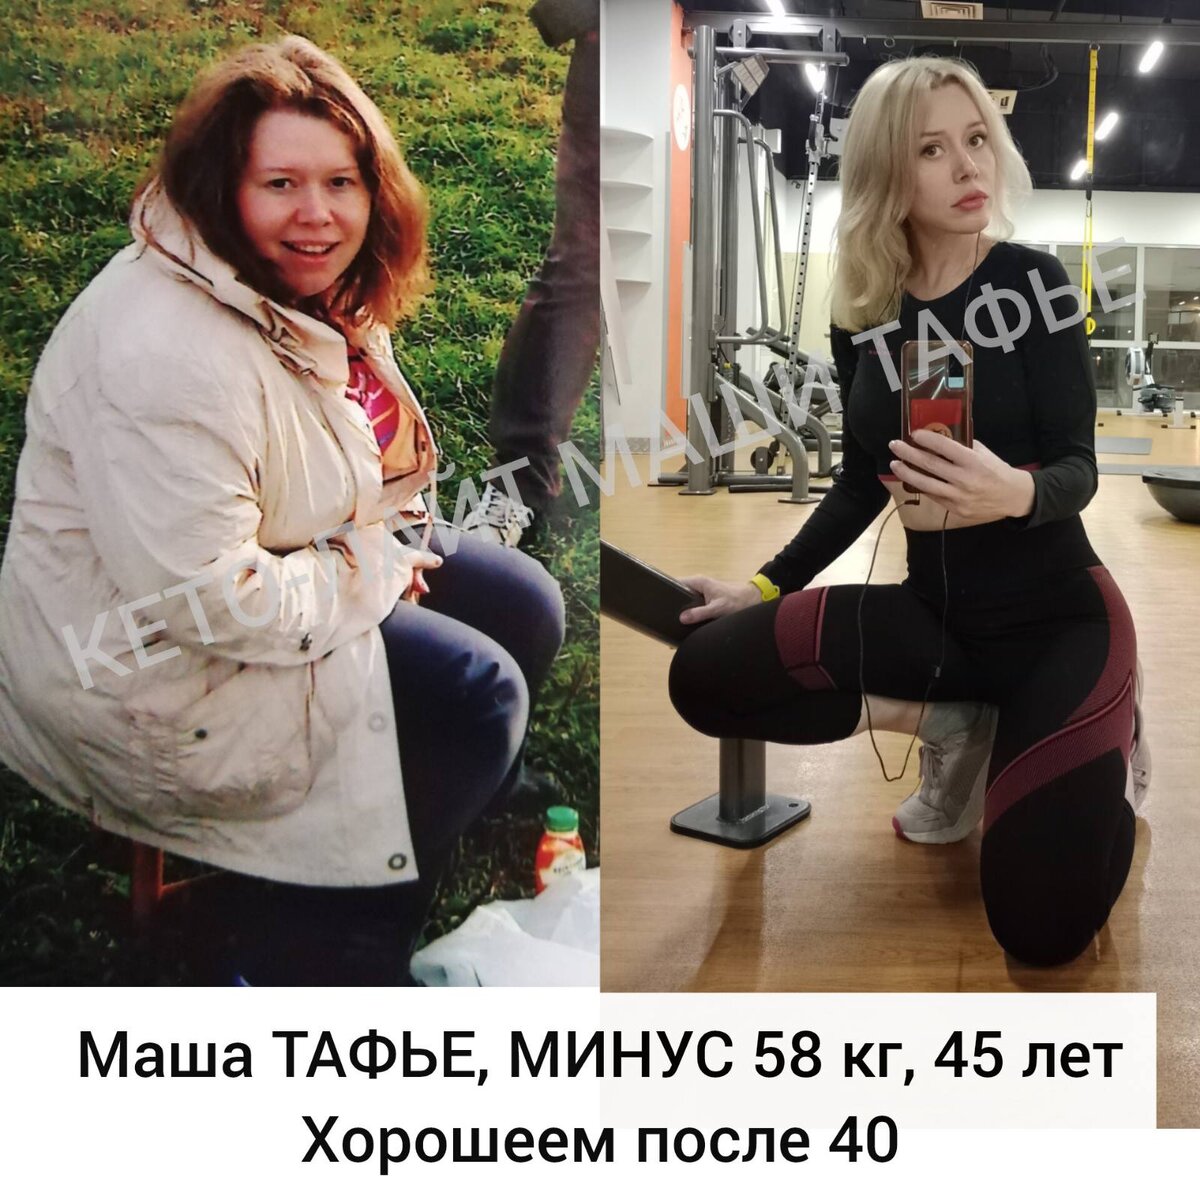 Маша Тафье, автор методики Кето-лайт, нутрициолог, психолог. Похудела на 58 кг.